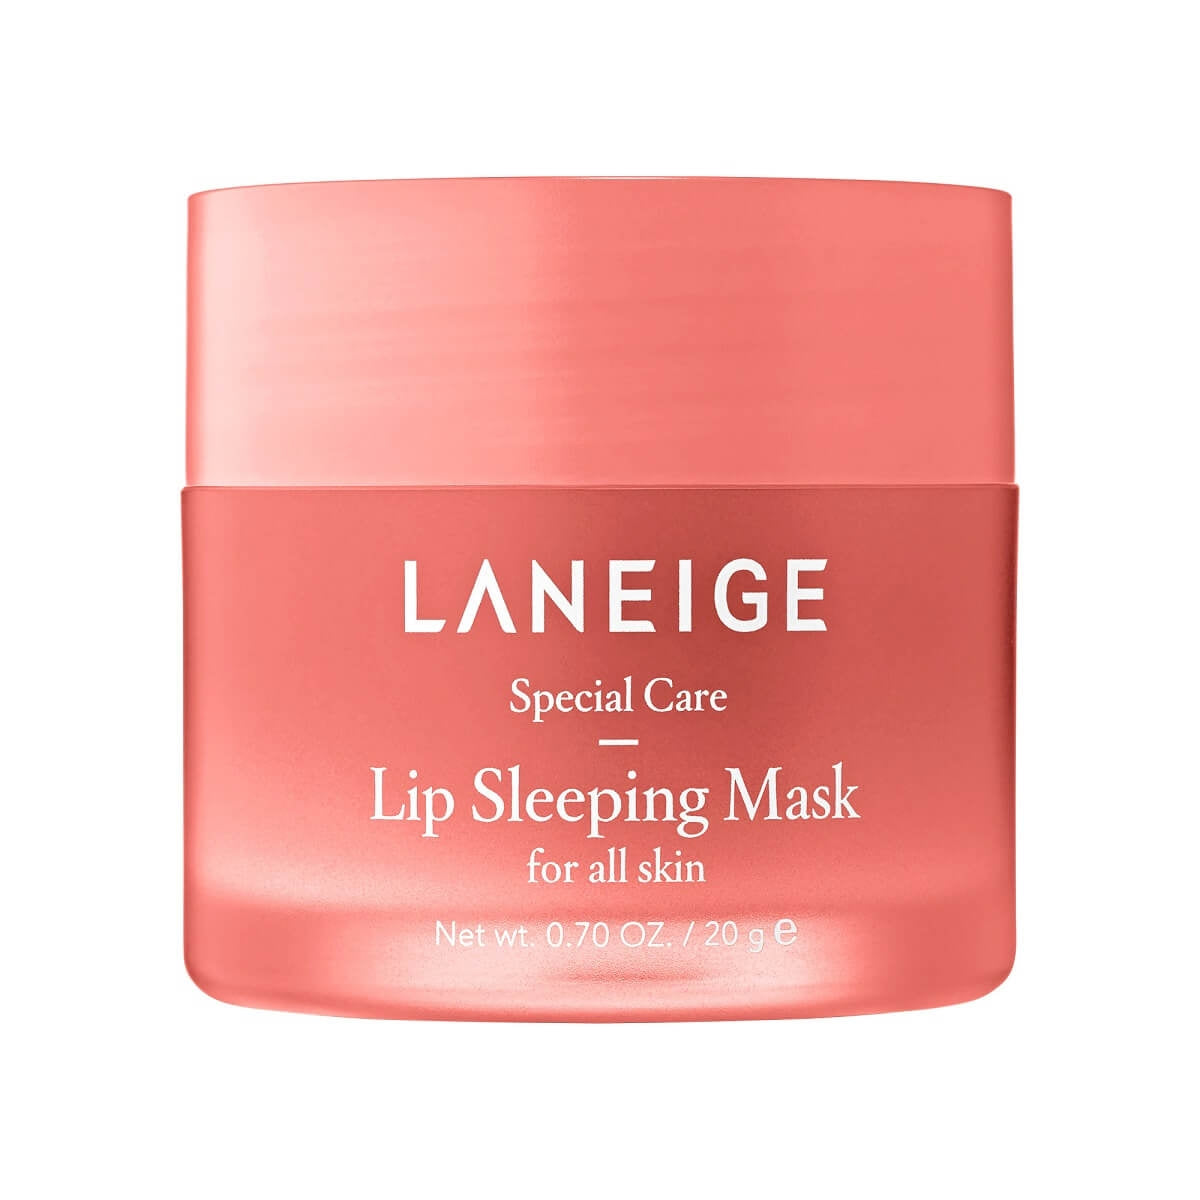 buy laneige lip sleeping mask review bangladesh price